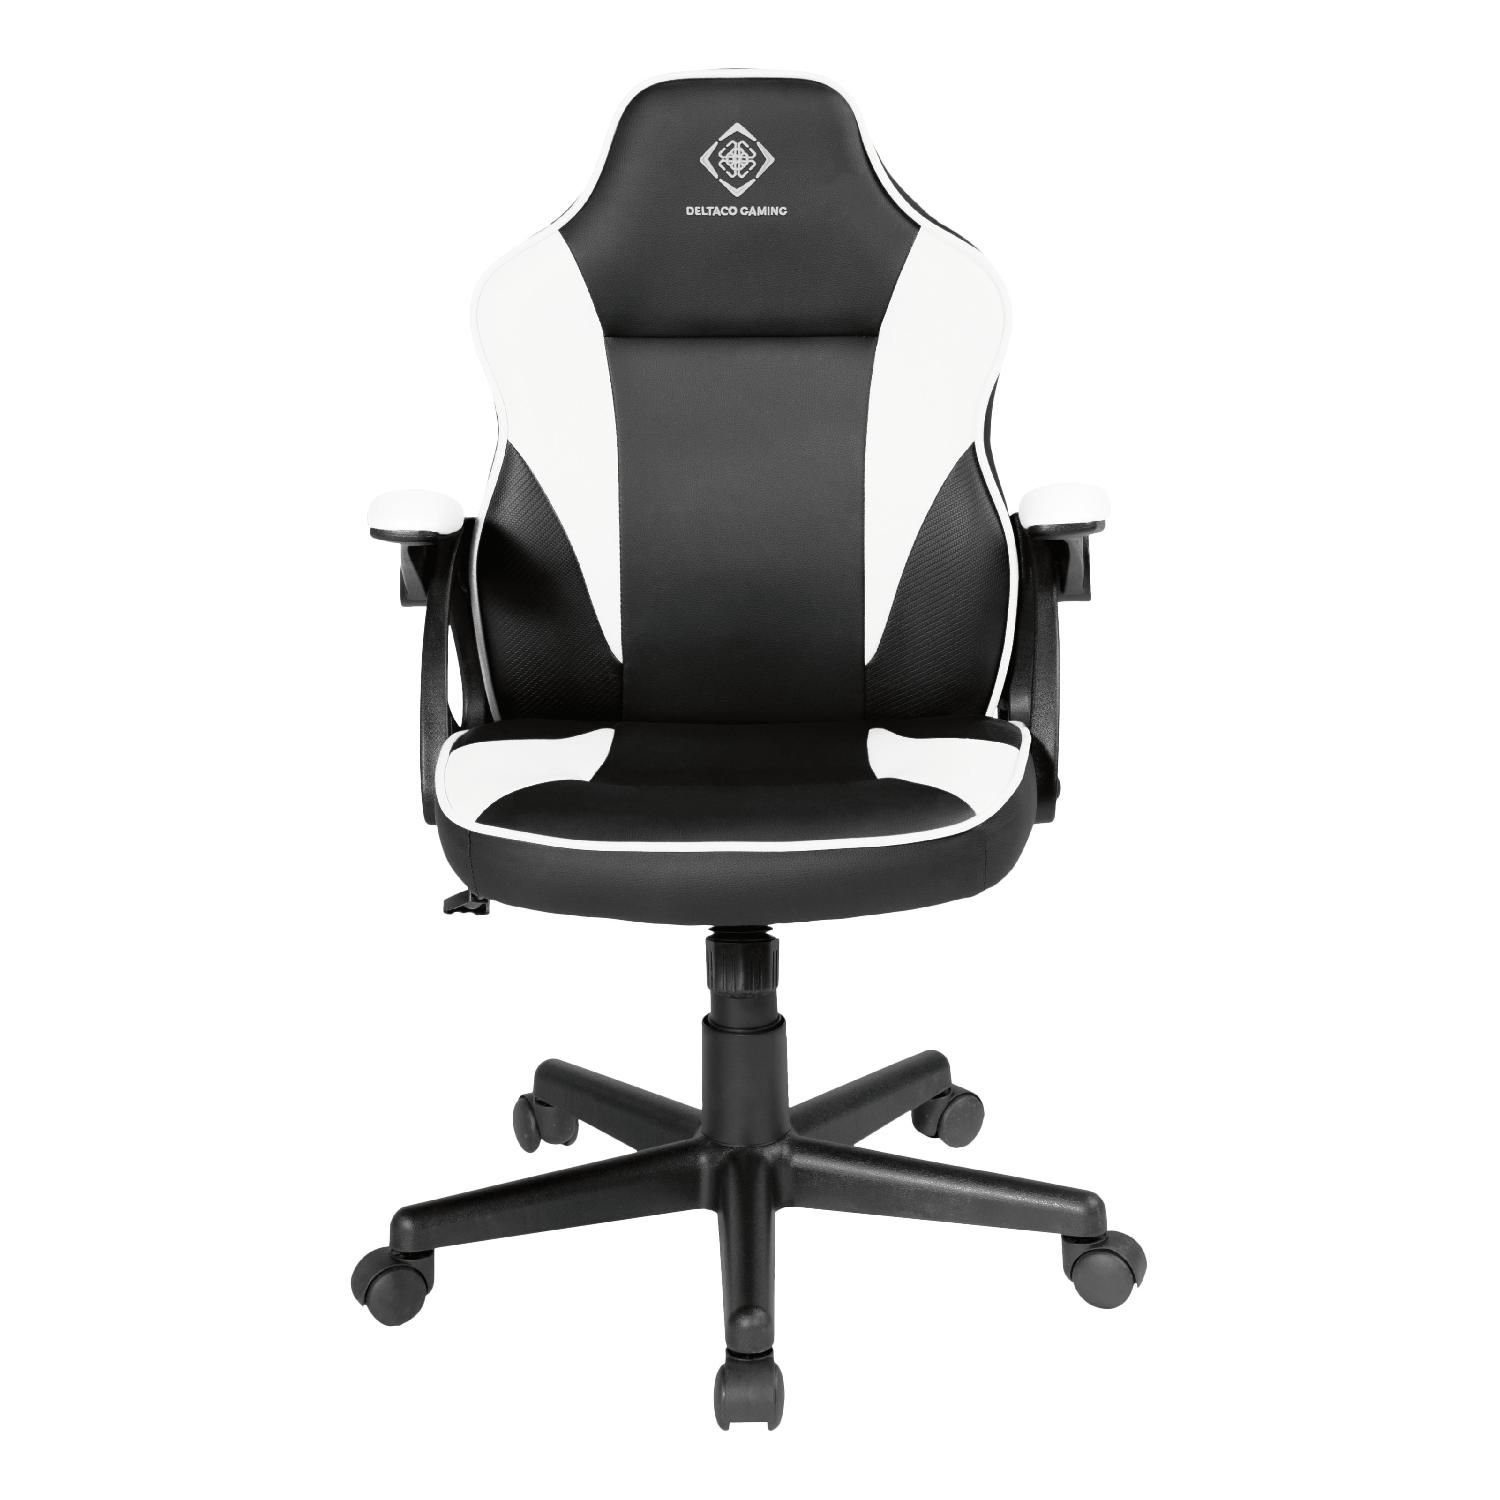 DELTACO Gaming-Stuhl Gaming Stuhl DC120 "Junior" höhenverstellbar Kunstleder, Bürostuhl für Kinder, klein, für Personen bis 150 cm